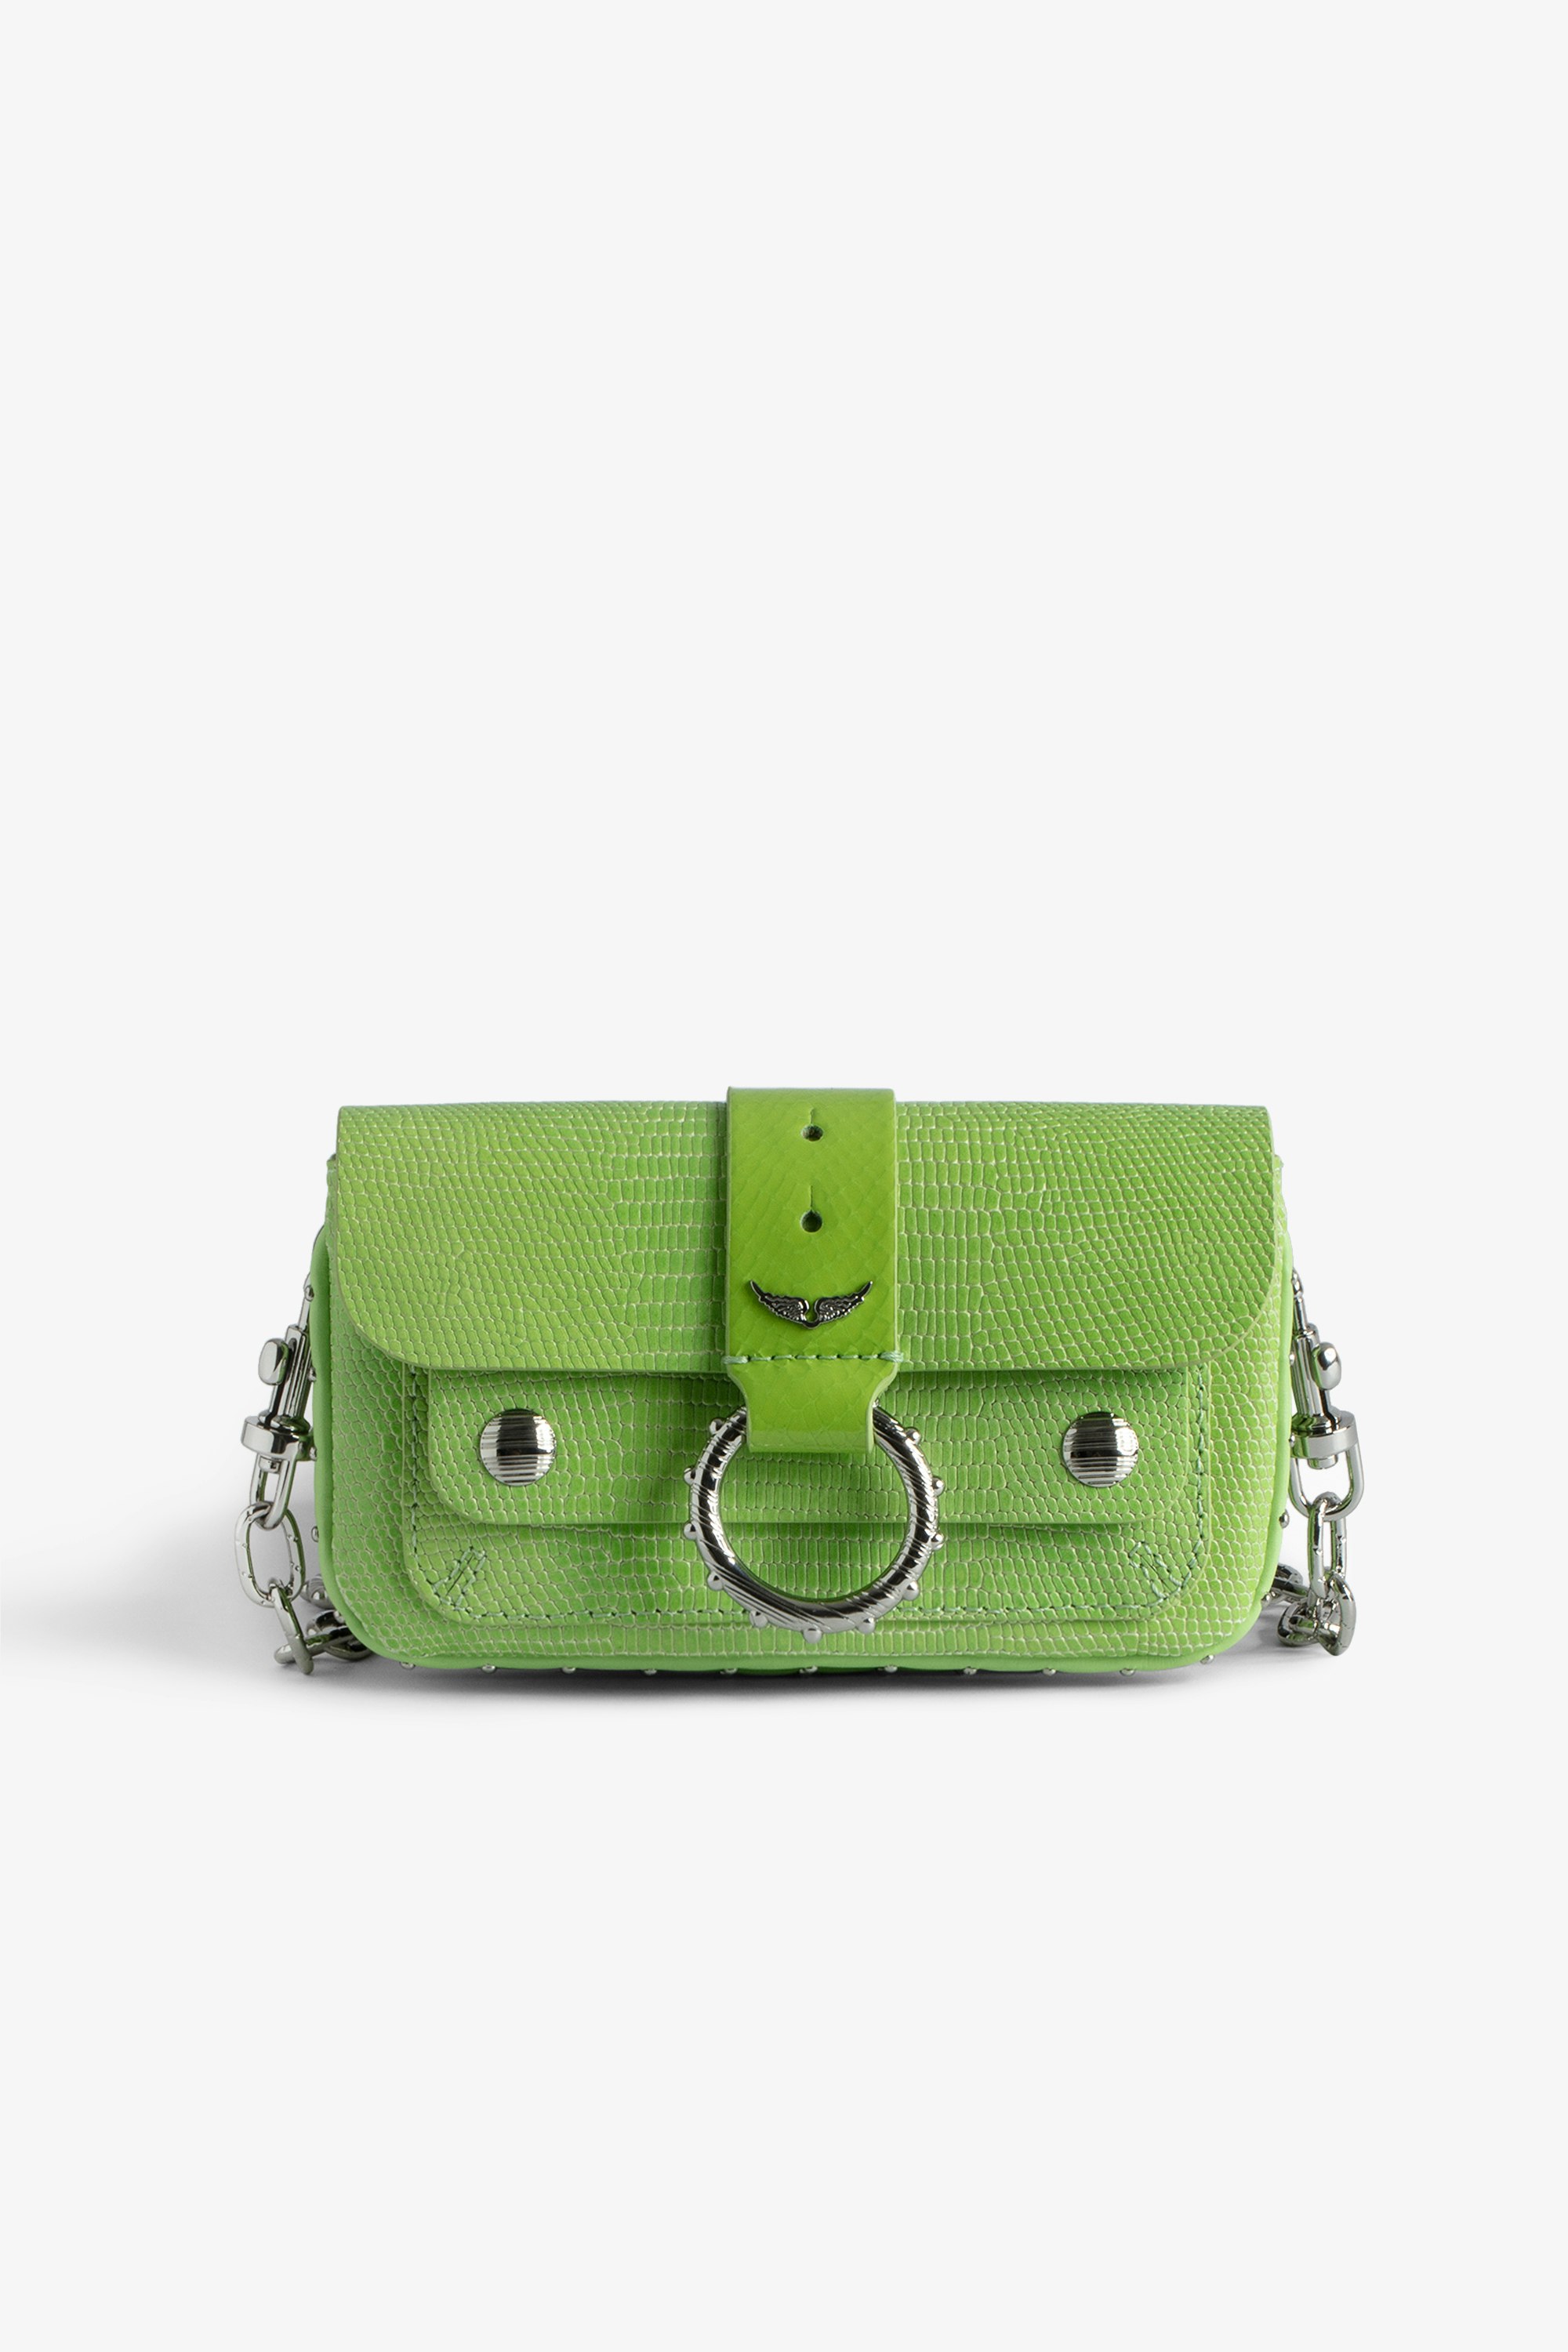 Tasche Kate Wallet Glossy Wild - Mini-Tasche aus glänzendem Leder in Grün Leguan-Effekt und Metallkette für Damen.